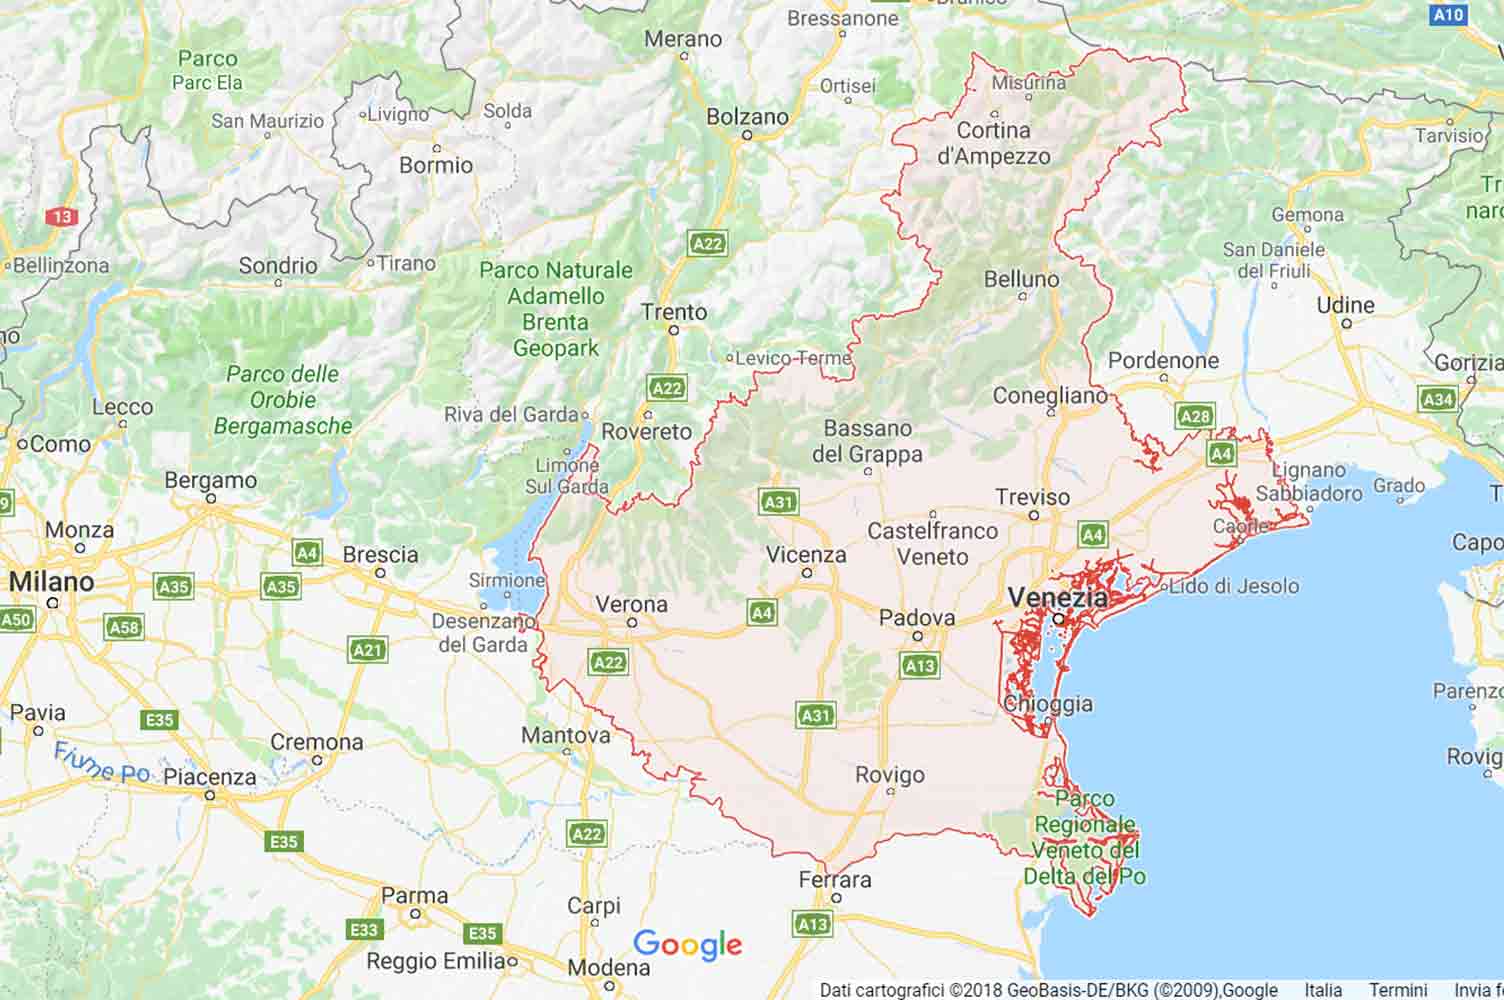 Veneto - Belluno - Borca di Cadore Preventivi Veloci google maps